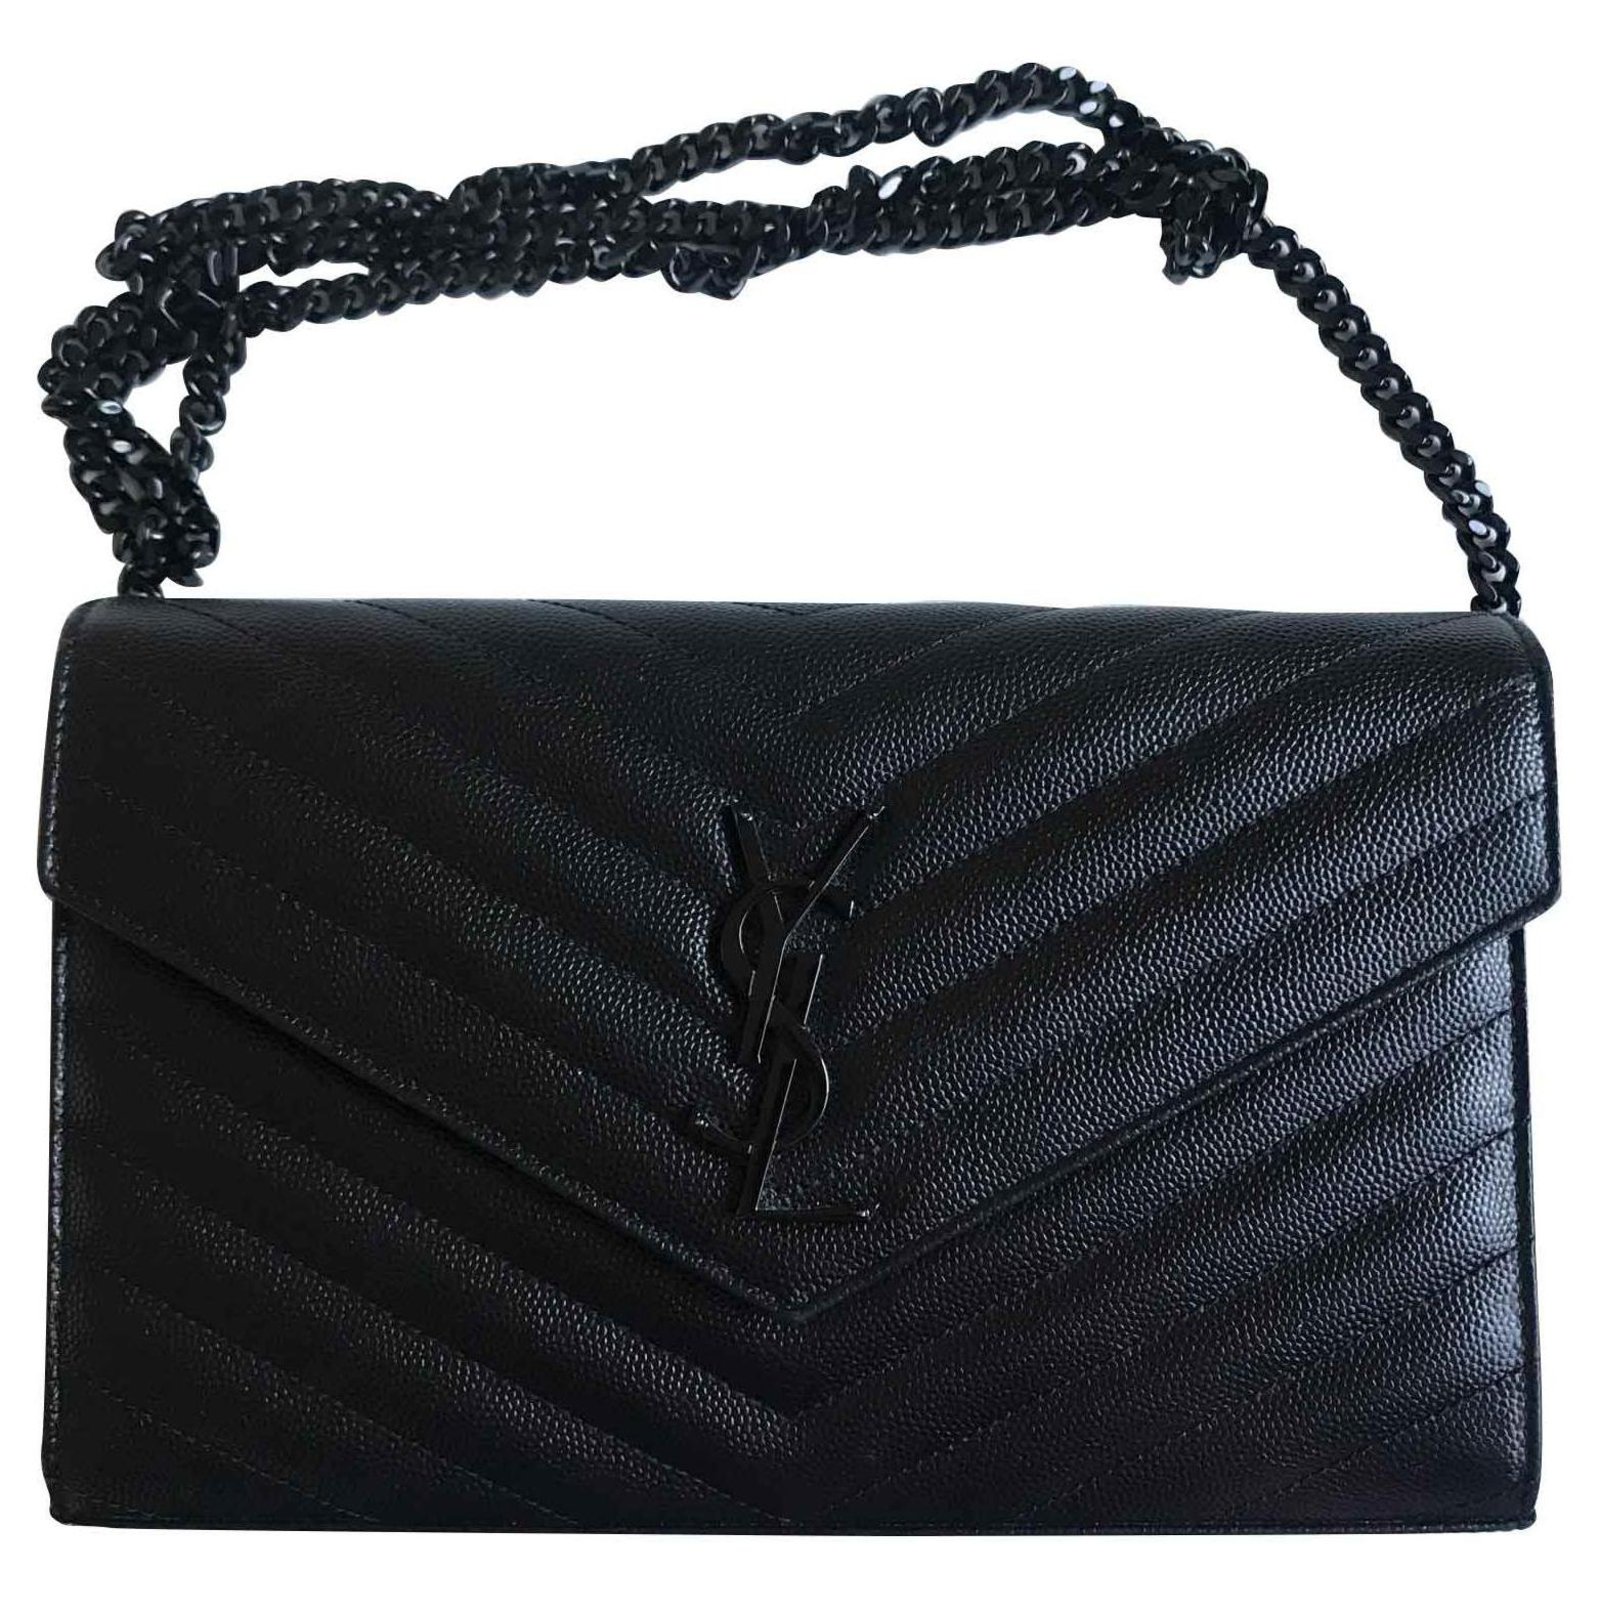 Saint Laurent Monogram Leather Chain Wallet Black